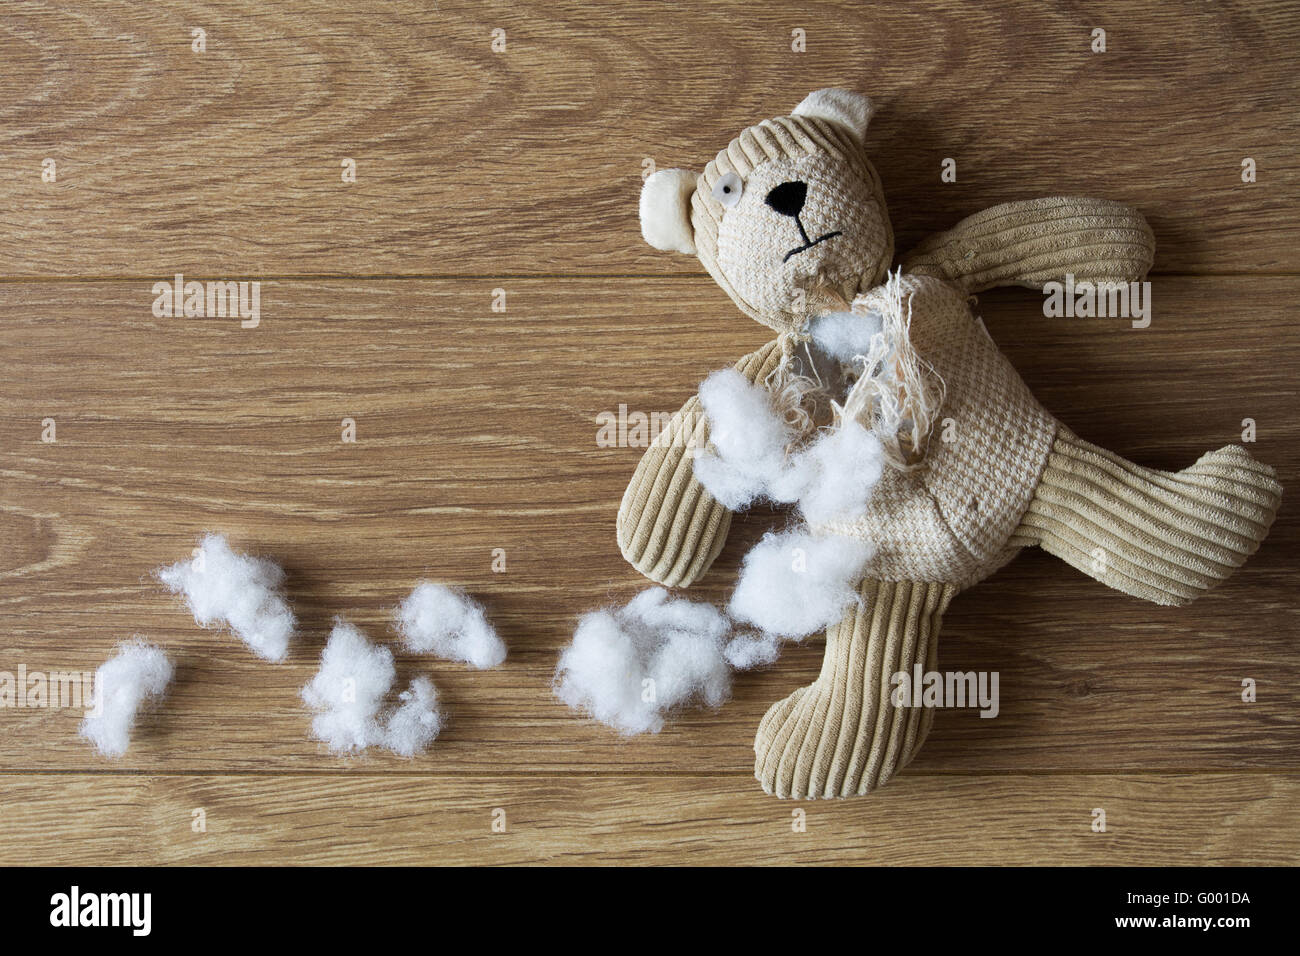 Eine traurige, verlassenen Teddybär mit seiner Füllung herausgezogen und in einem dunklen, hölzernen Fußboden verstreut. Stockfoto